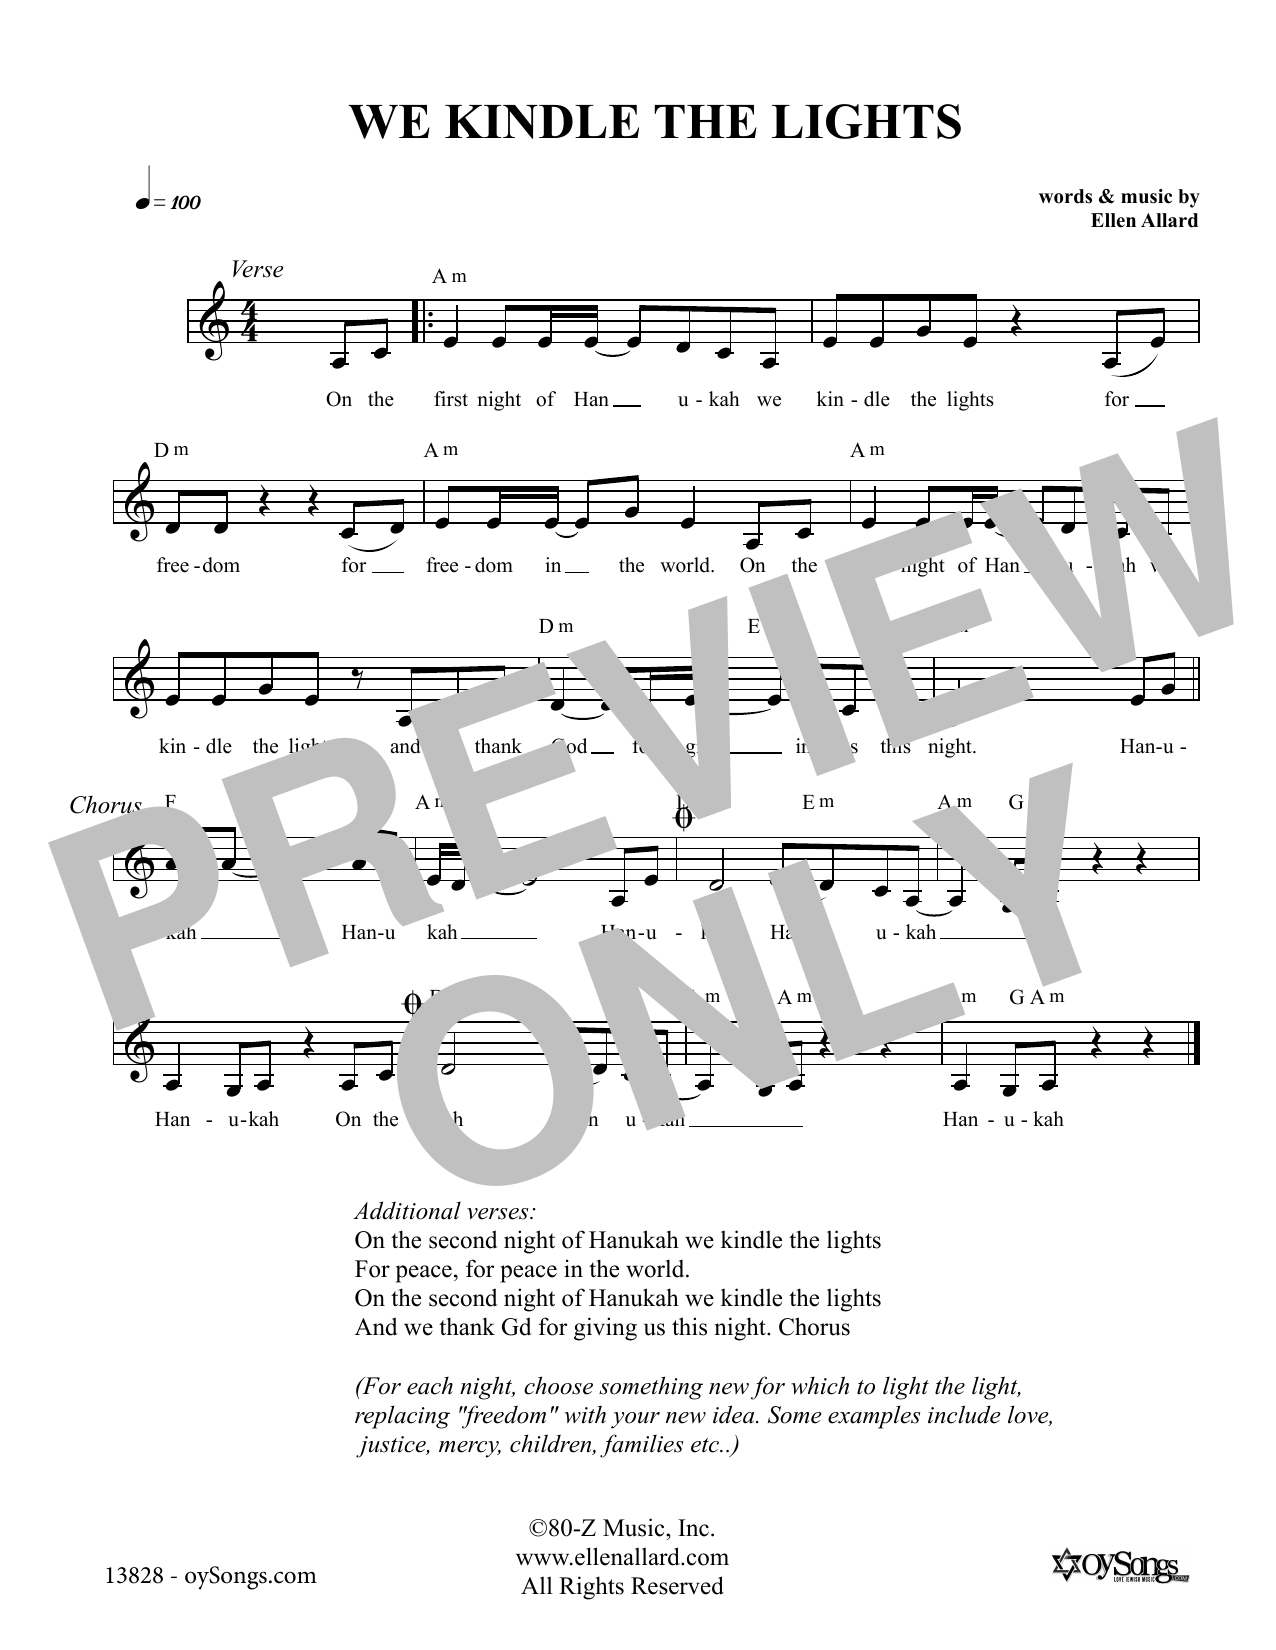 Ellen Allard We Kindle the Lights Sheet Music Notes & Chords for Melody Line, Lyrics & Chords - Download or Print PDF